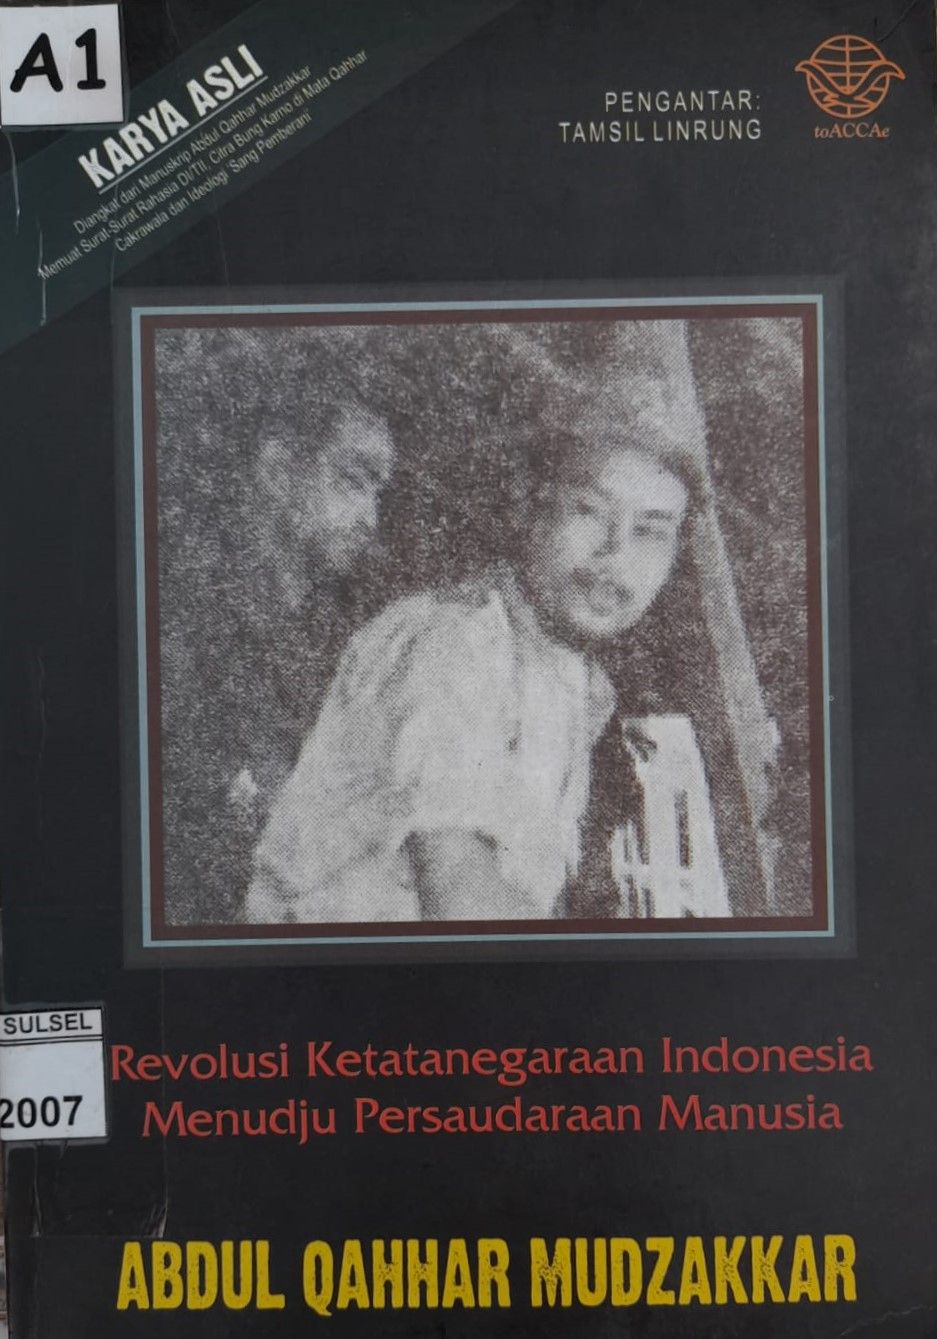 Buku REVOLUSI KETATANEGARAAN INDONESIA MENUDJU PERSAUDARAAN MANUSIA karya Abdul Qahhar Mudzakkar